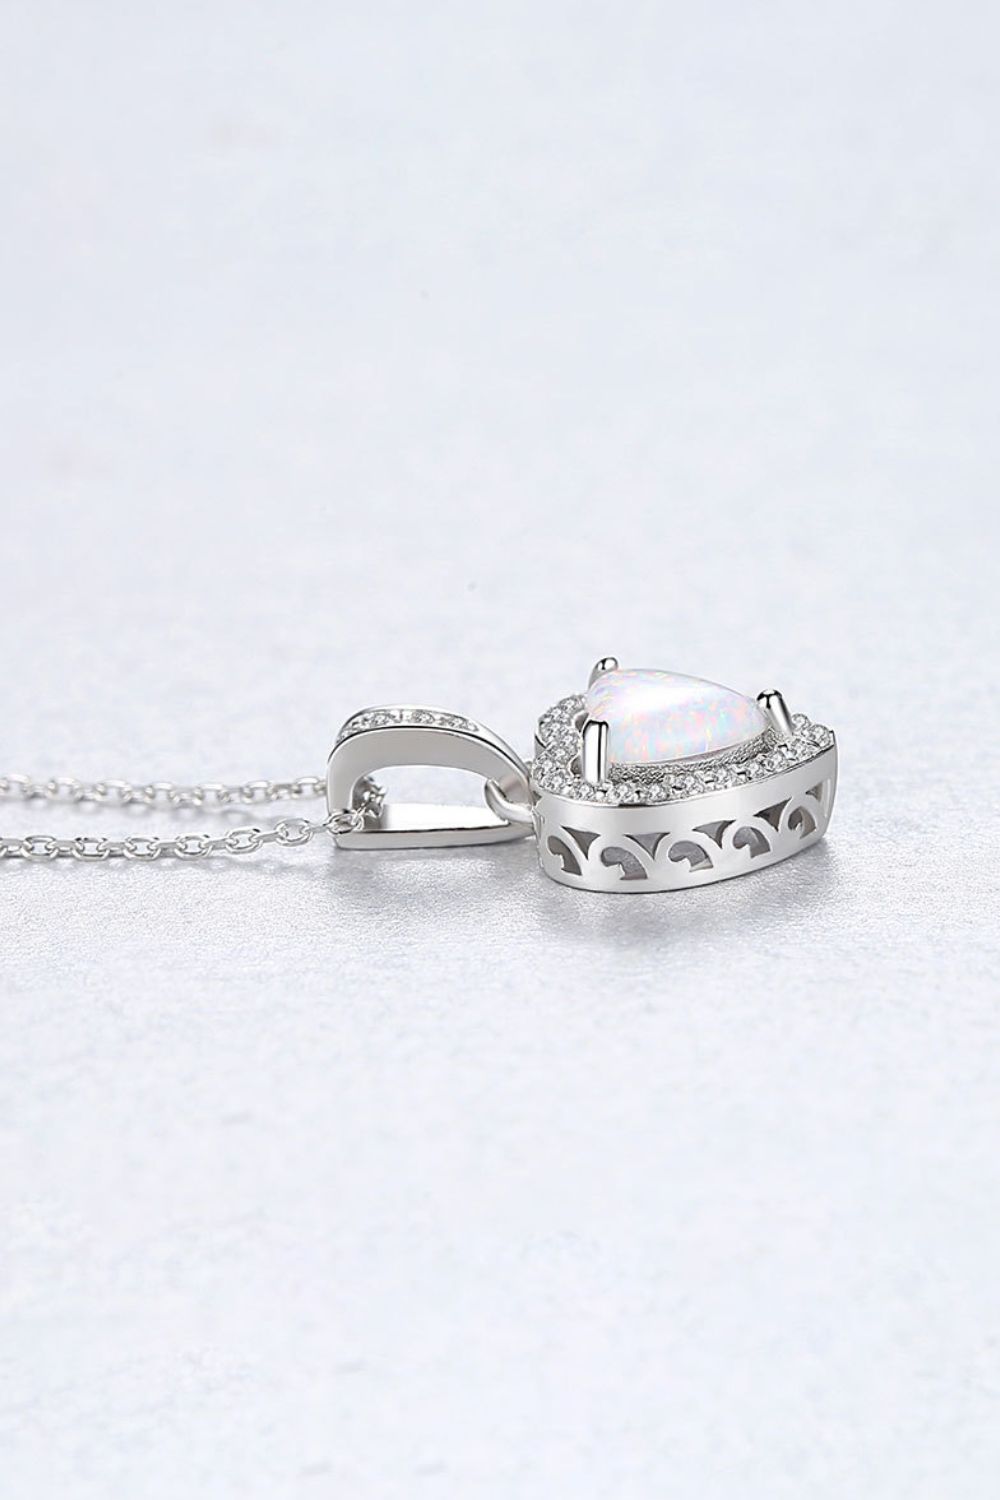 Silver Opal Heart Pendant NecklaceNecklaceBeach Rose Co.